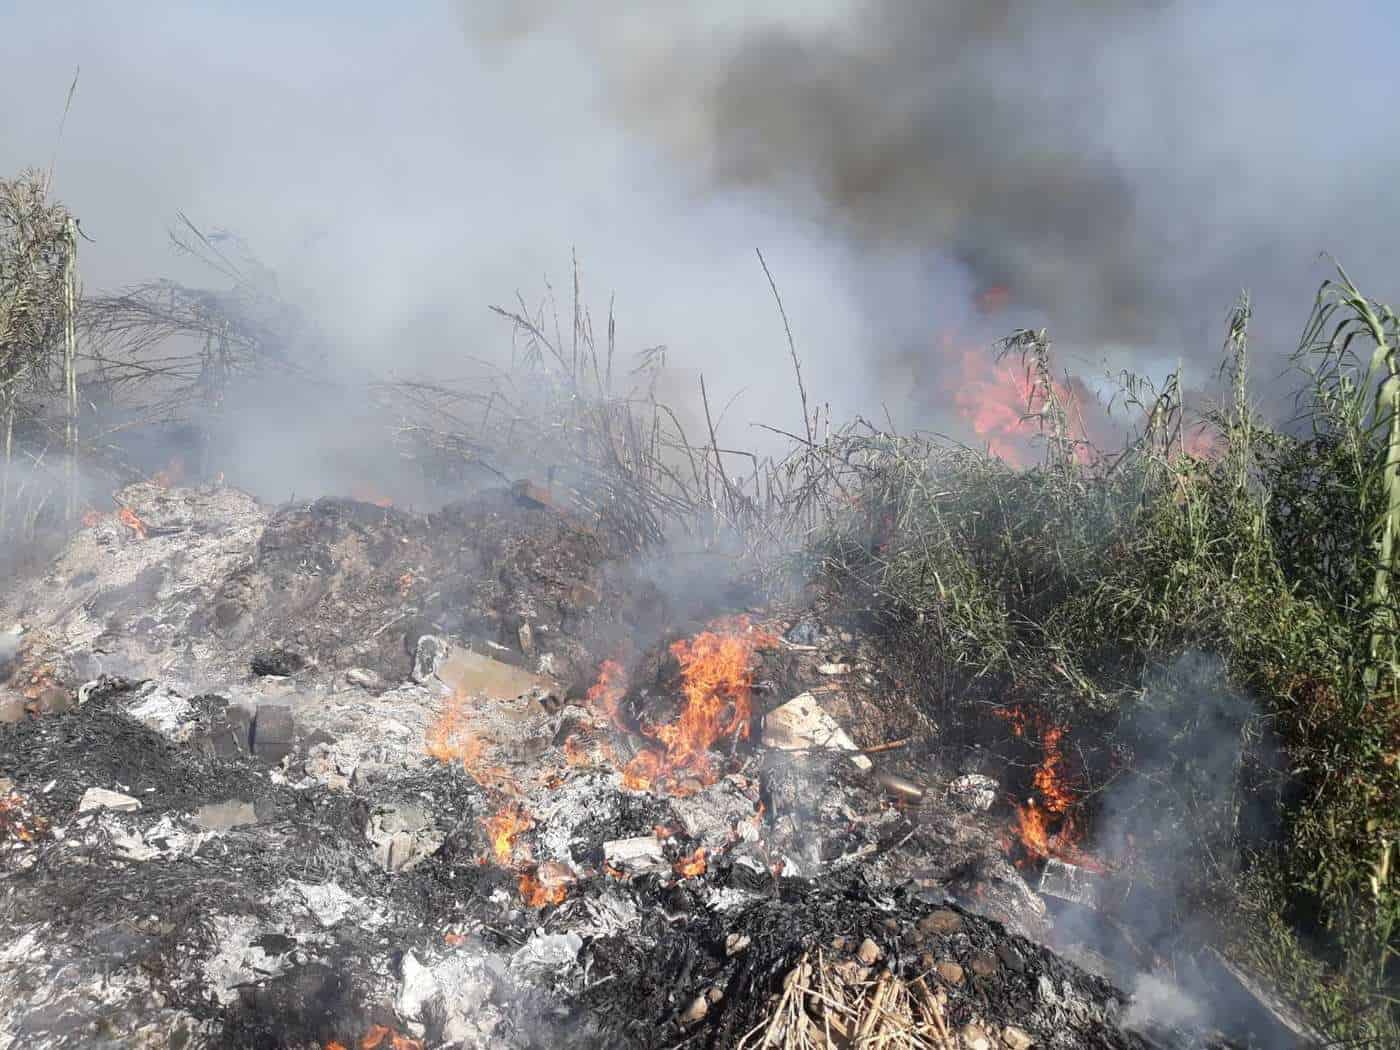 Δύο εστίες φωτιάς σε περιοχή νότια του Καινουρίου στην θέση “Λιγόρεμα” απειλούν λιοστάσια